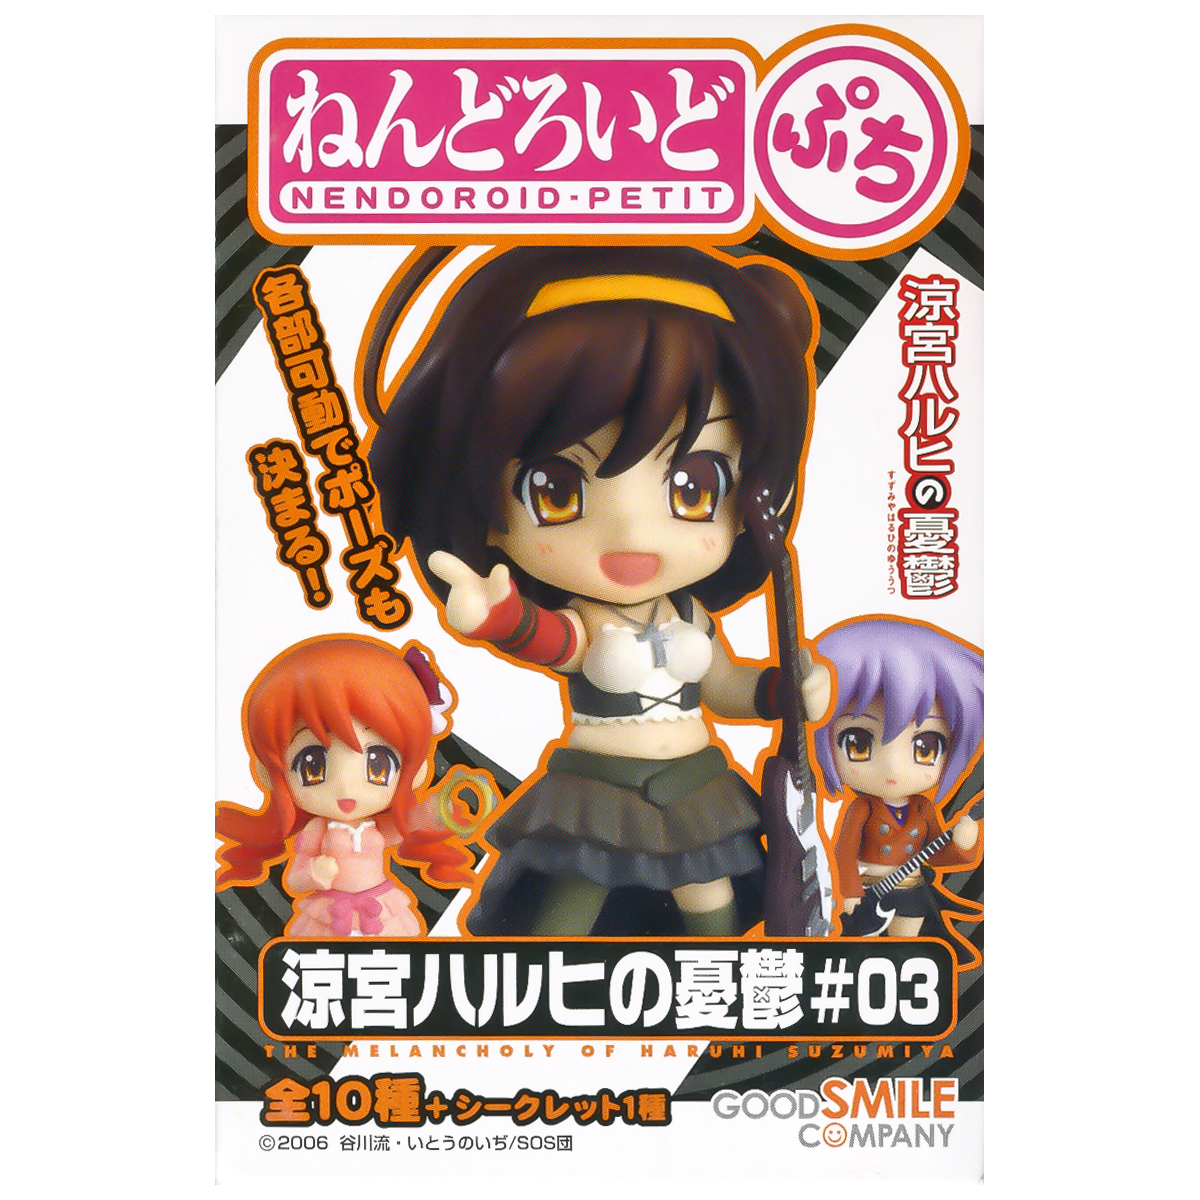 Melancholy of Haruhi Suzumiya Nendoroid Trading Figure Anime Random Blind Box #1